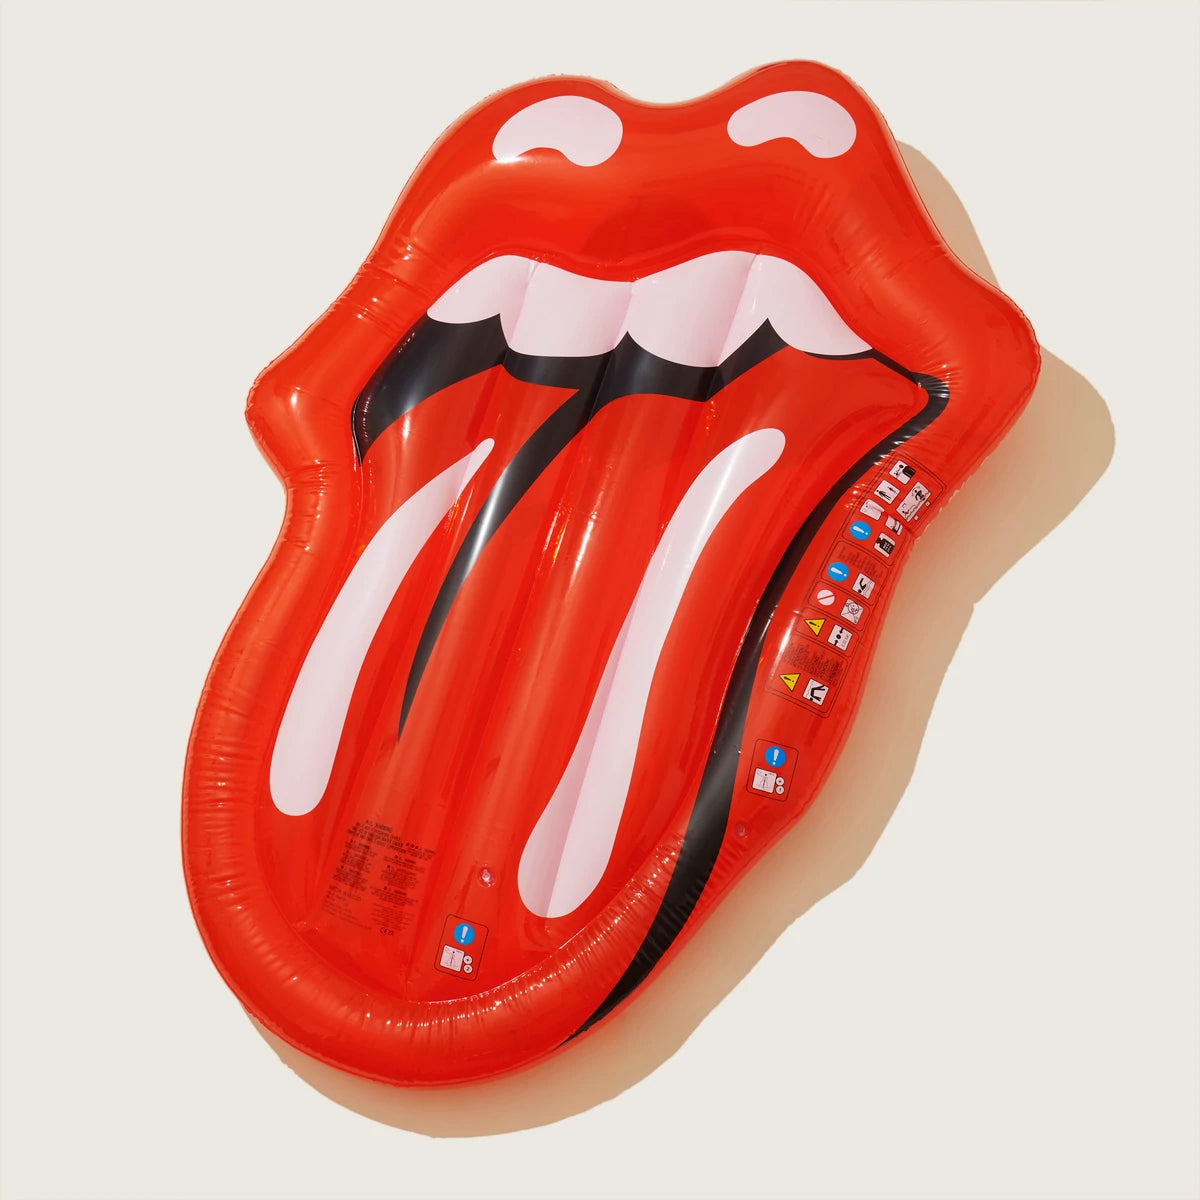 Flotador para tumbarse de lujo - Labios de los Rolling Stones - Sunnylife